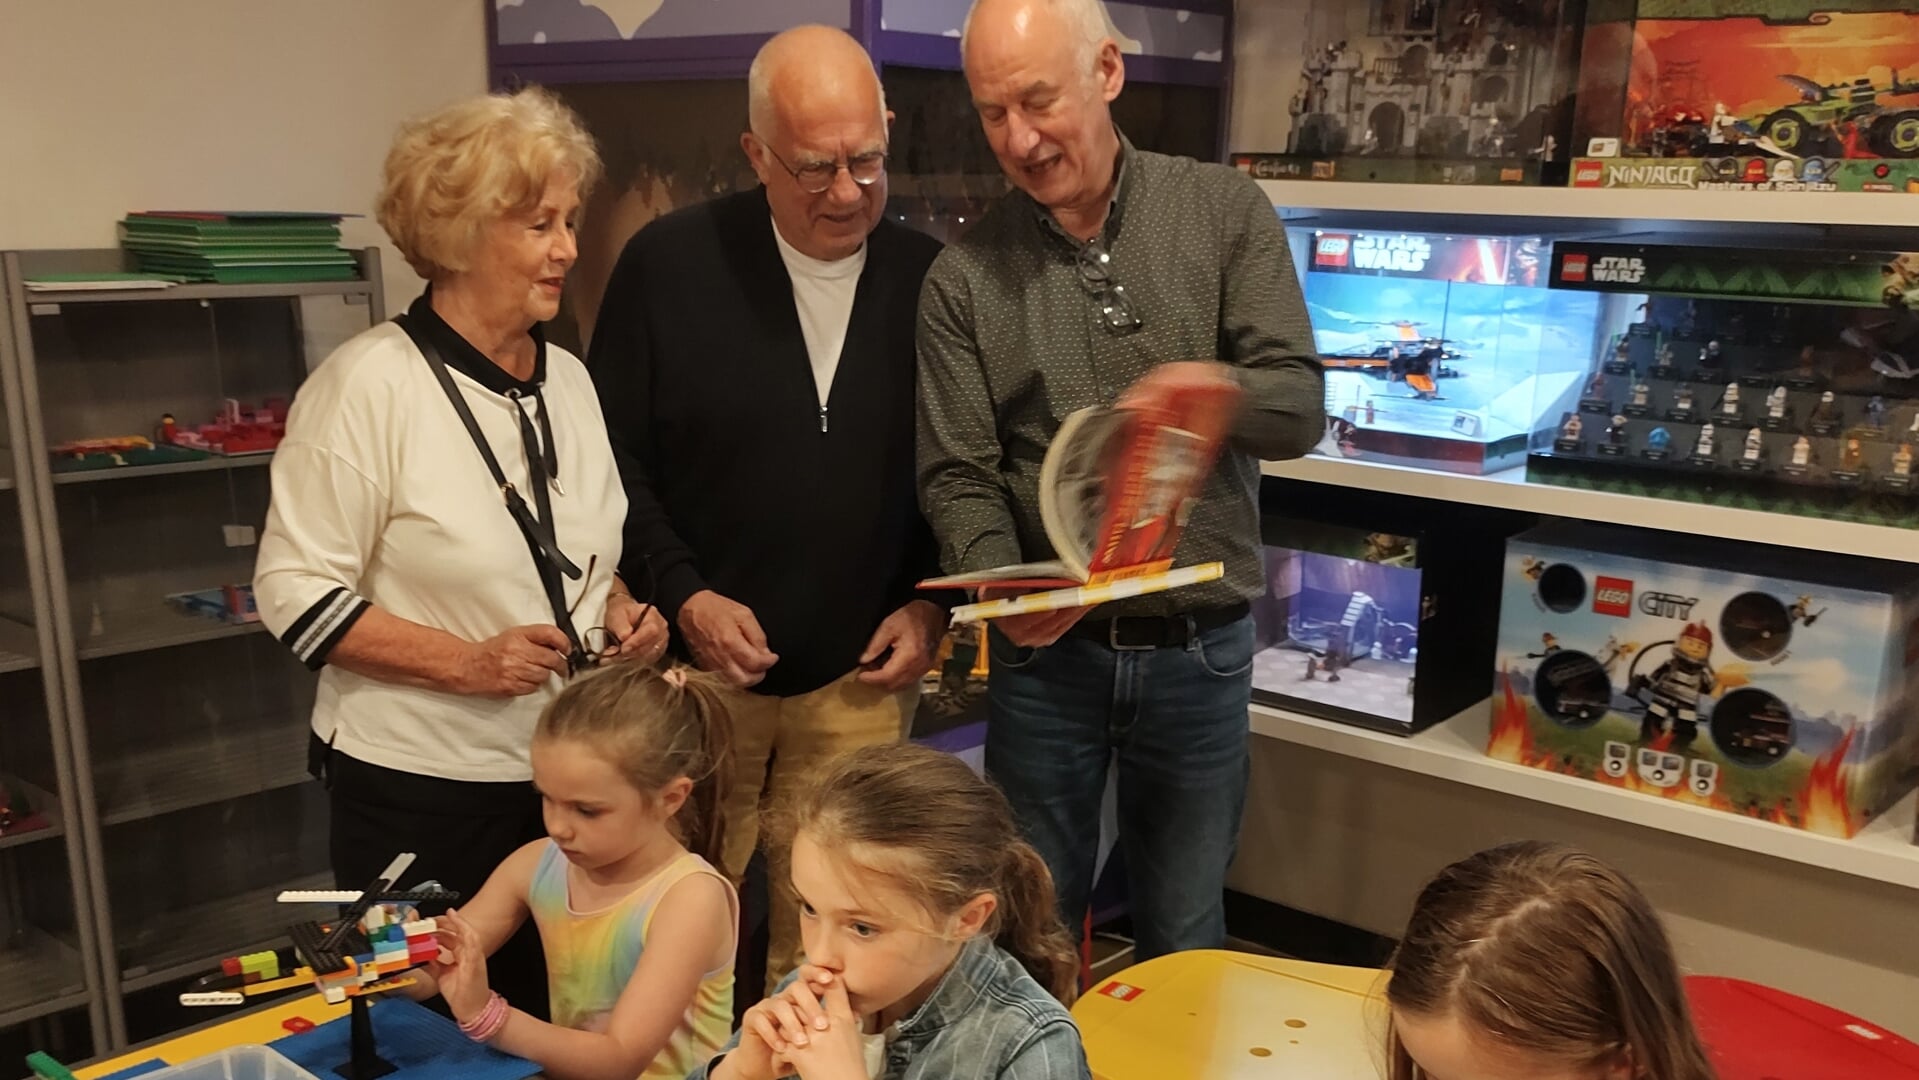 De zussen Lotte, Carolijn en Emma uit Heemstede, drie enthousiaste LEGO-bouwers, waren met opa Ton en oma Maria uit Zandvoort naar het Hoornse museum gegaan en werden verrast met het nieuws van de 50.000e bezoeker.  